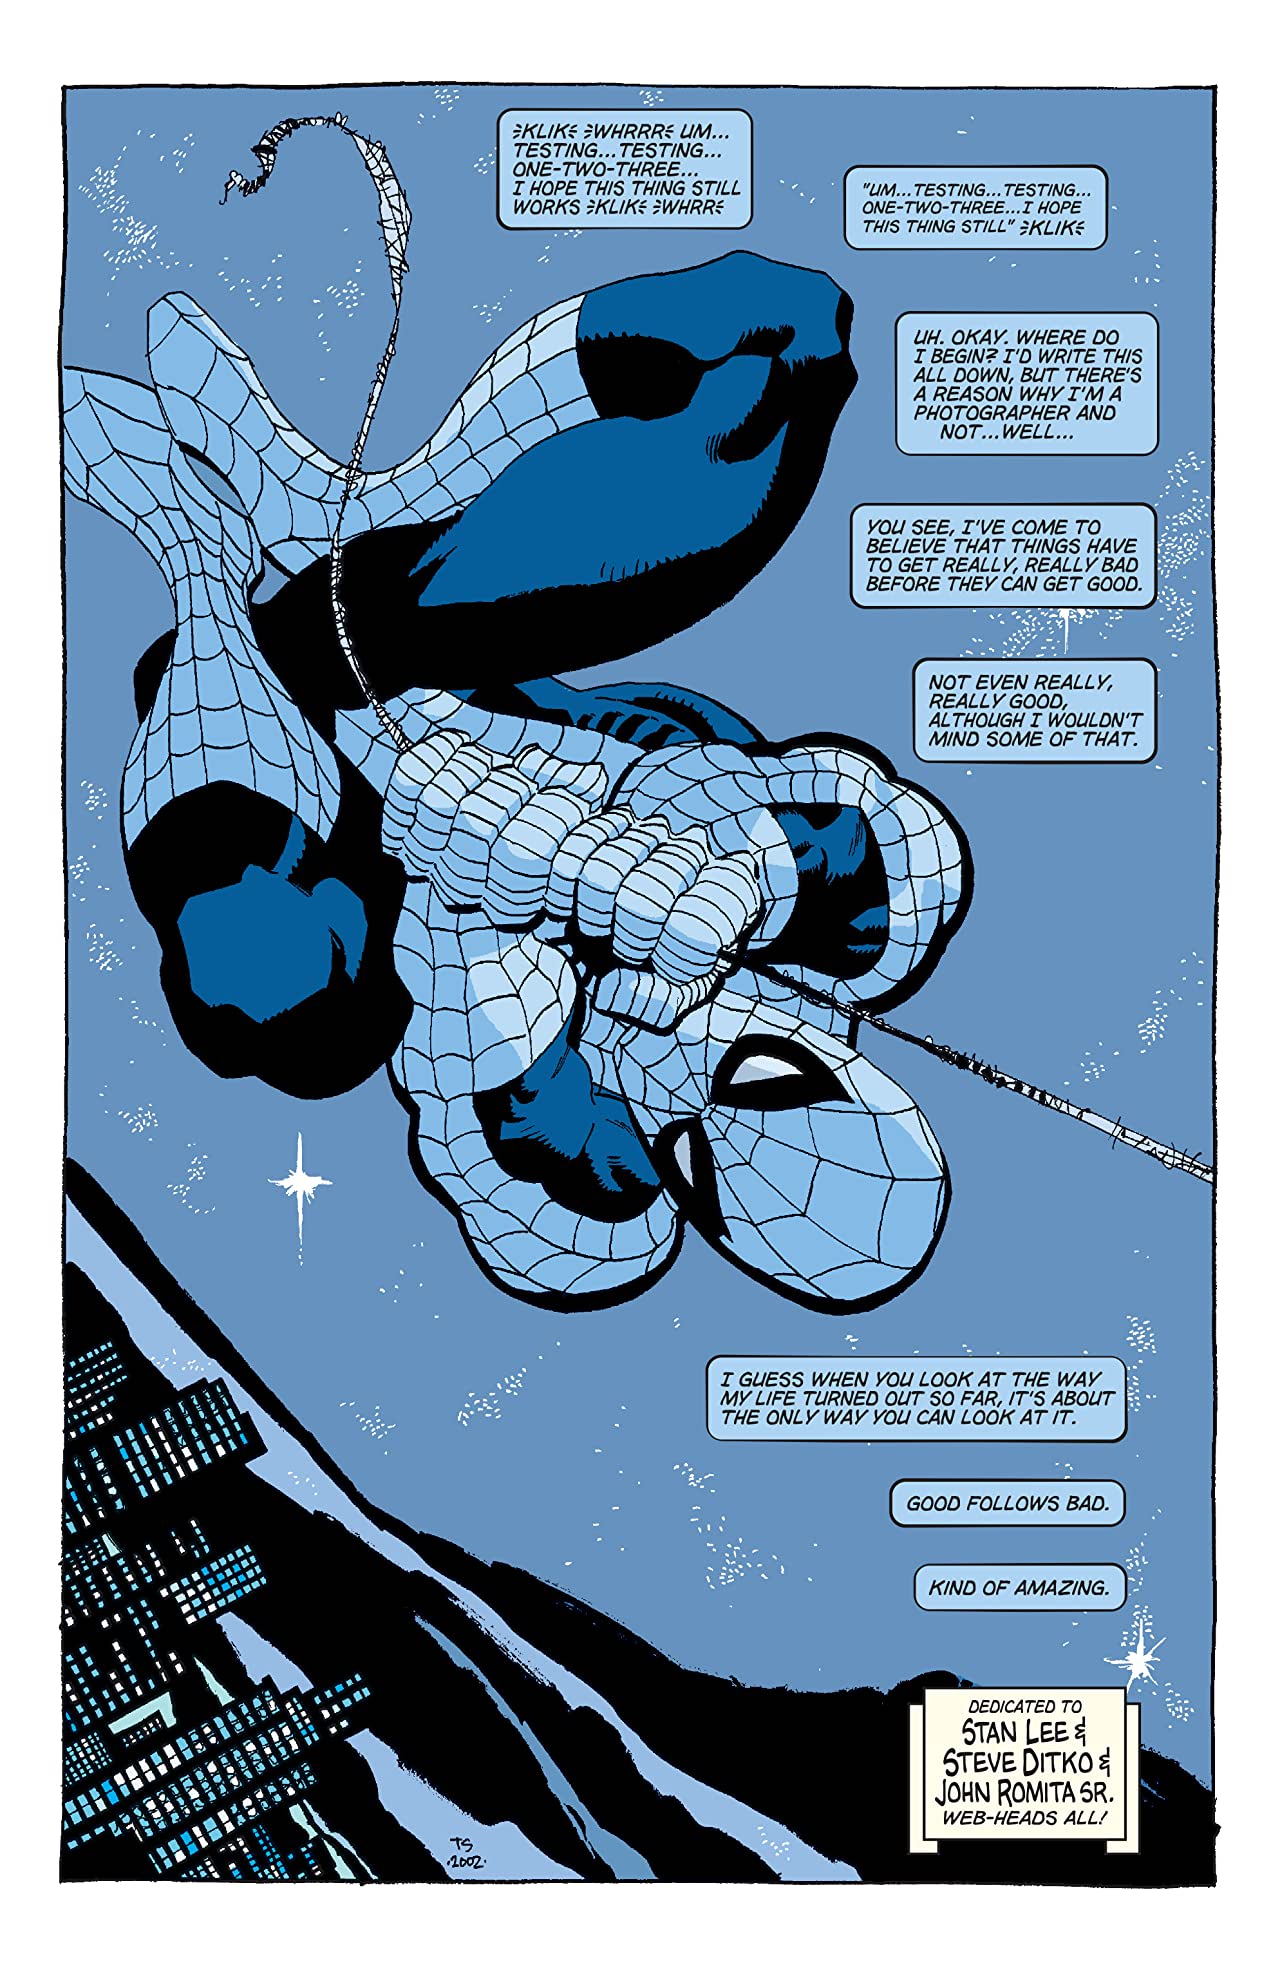 Una carta de amor: Spiderman Blue (2002-2003) | Central Mutante ::.